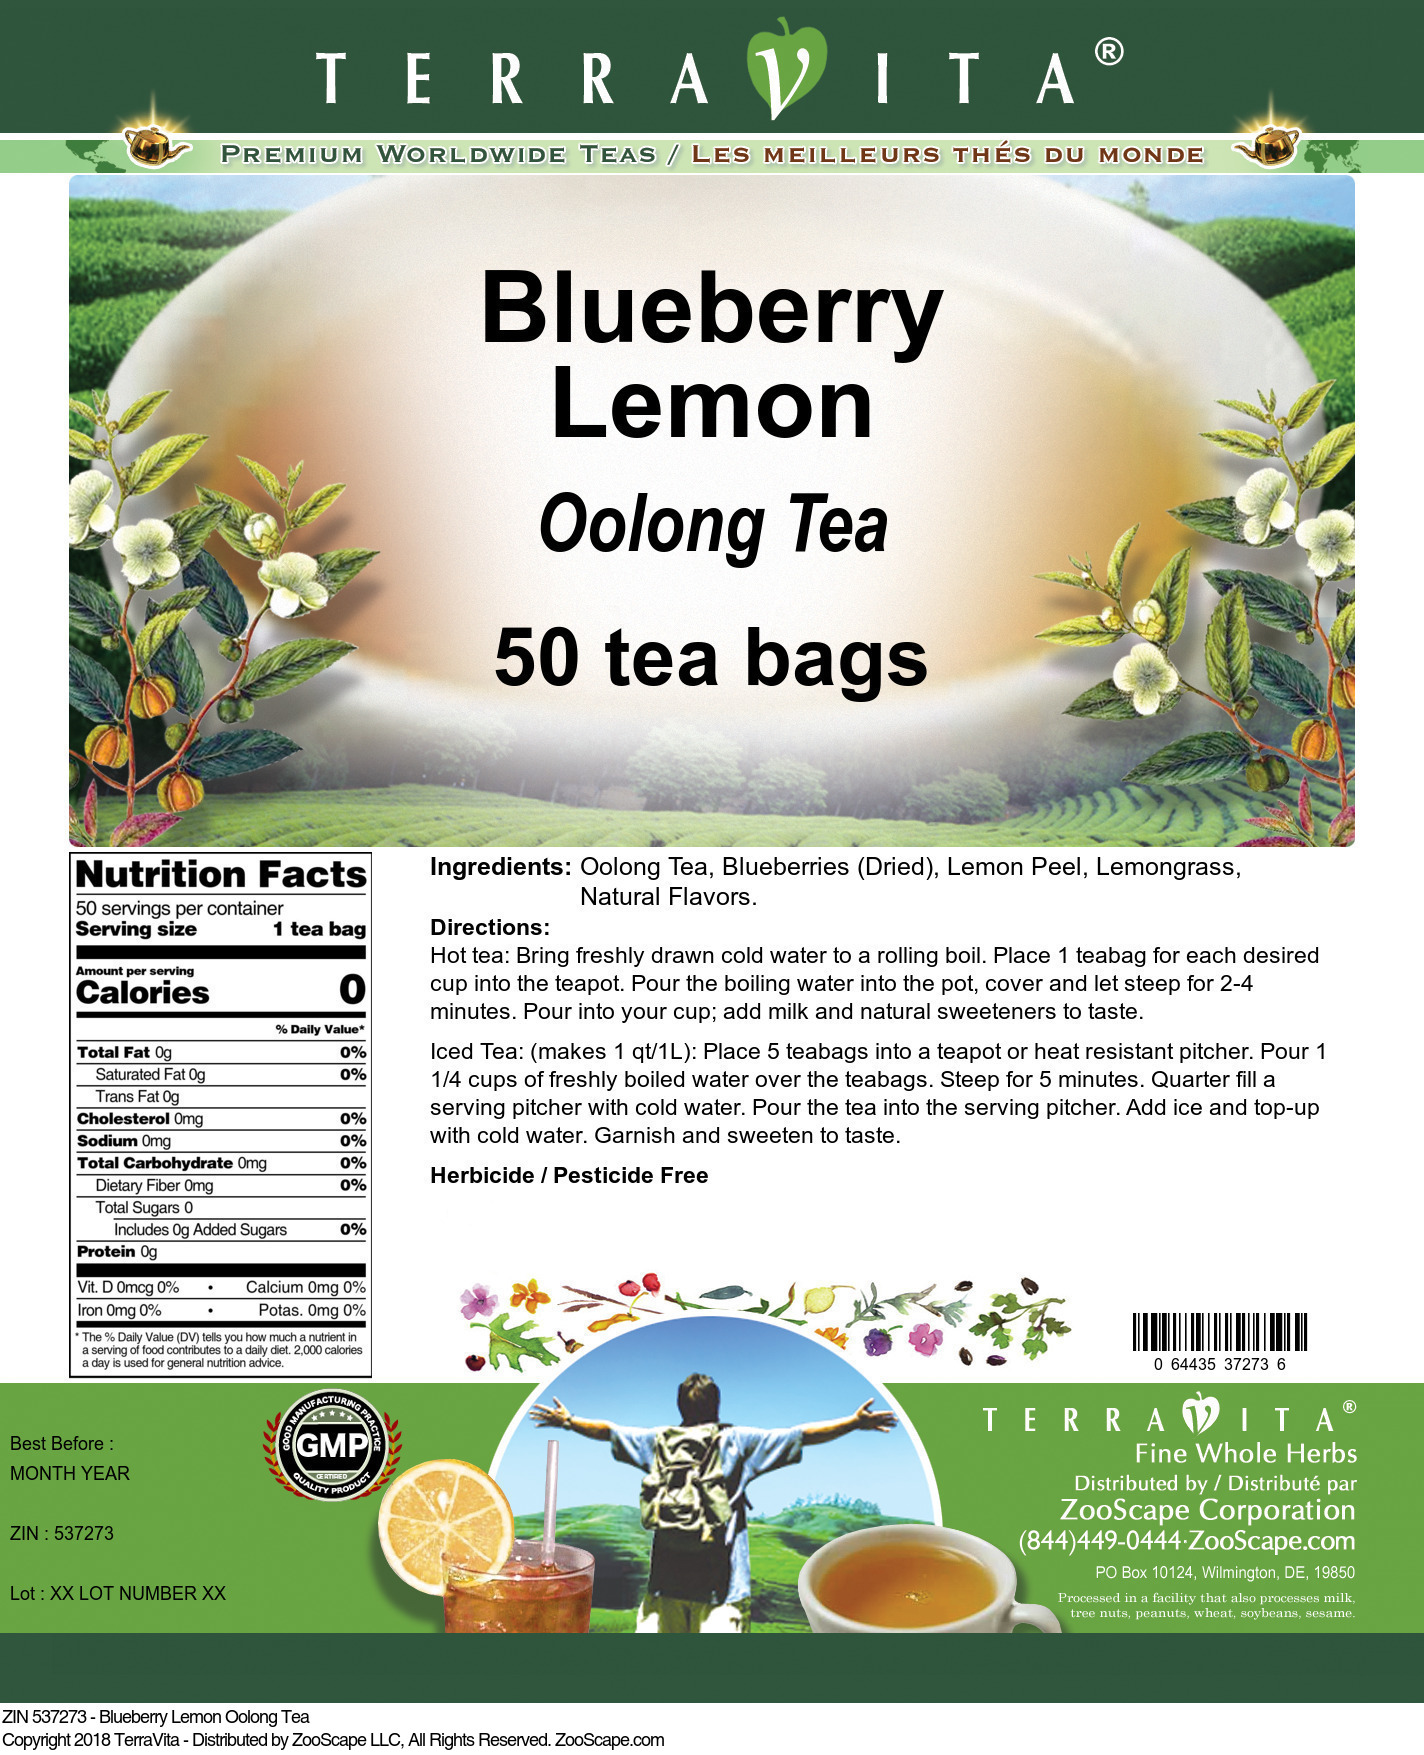 Blueberry Lemon Oolong Tea - Label